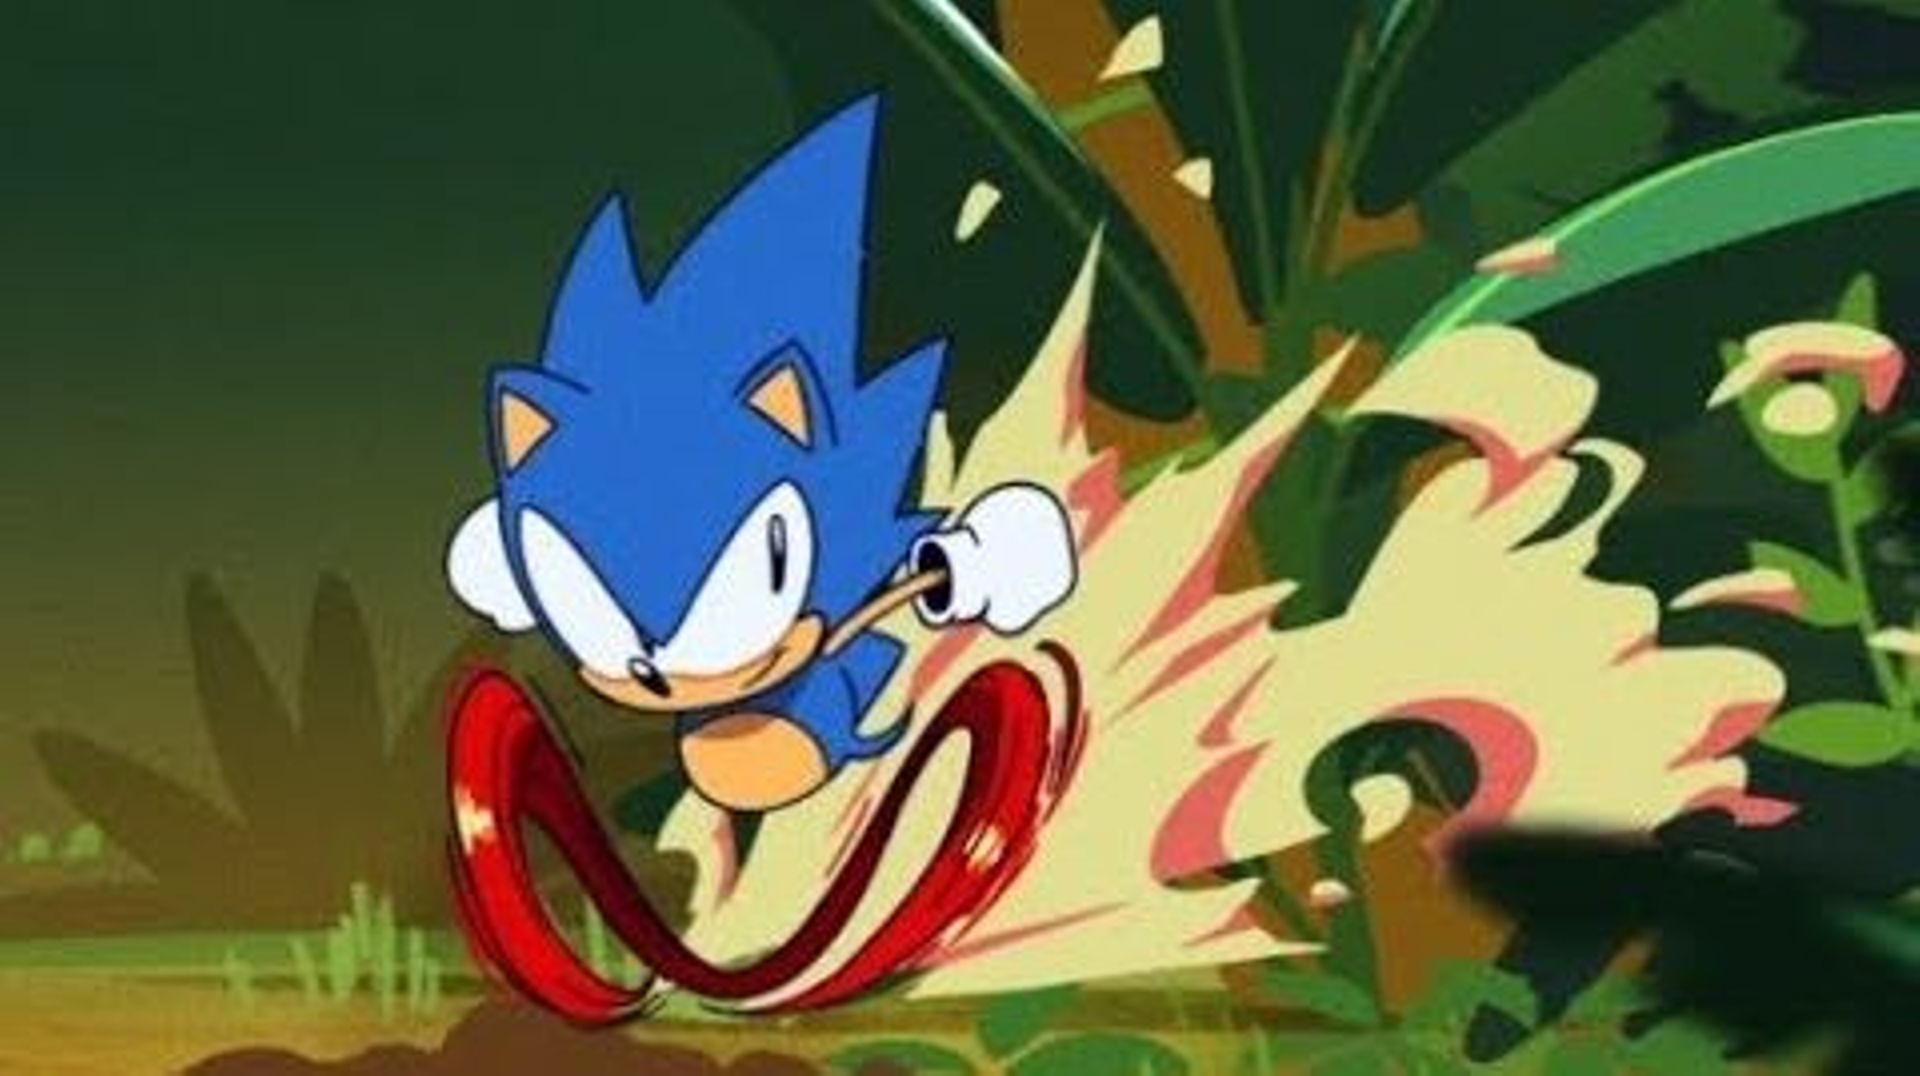 Sonic Mania pode ser como um renascimento do clássico mascote da Sega? -  Games - Campo Grande News